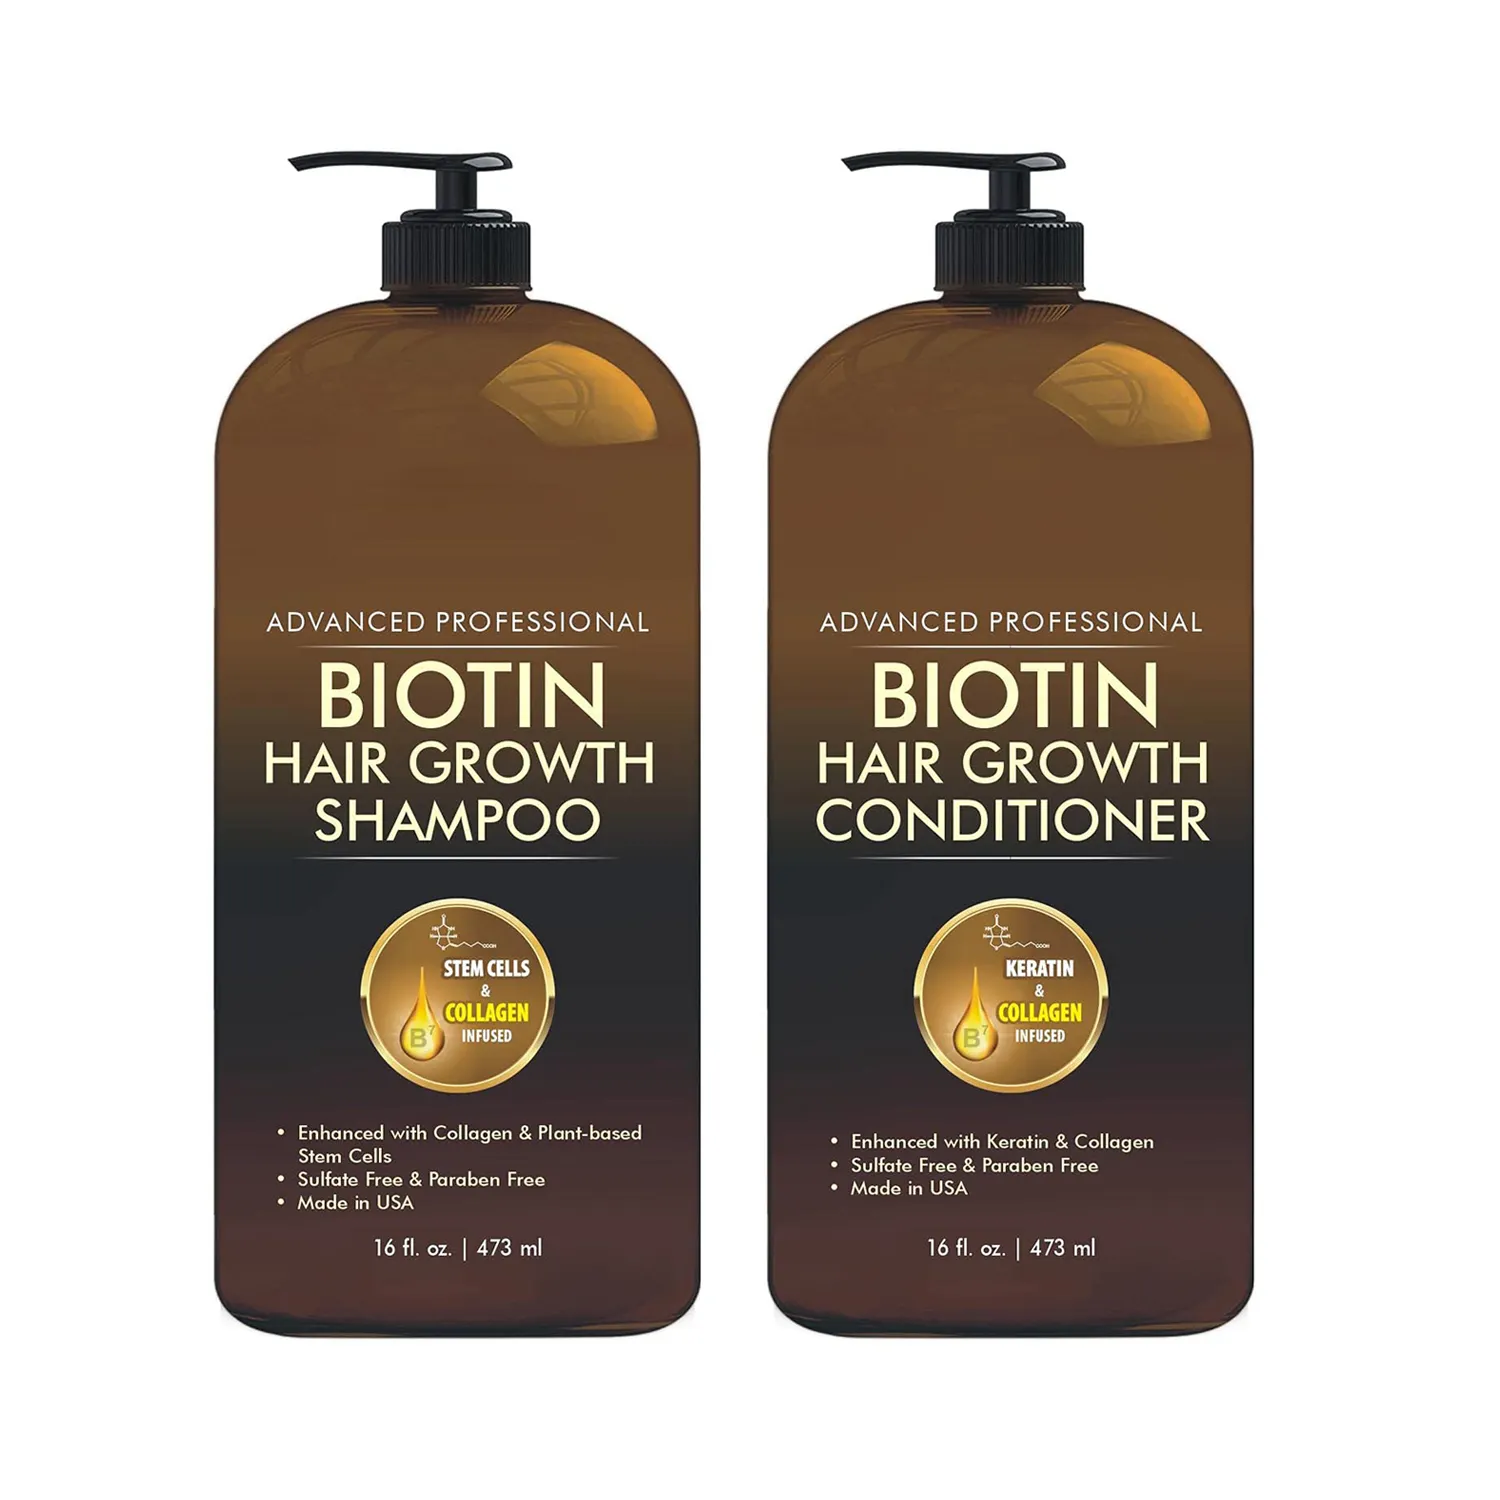 Shampoing et Après-Shampoing à la Biotine, Produit Anti-pelliculaire de Marque Privée, Végétal, Naturel, Sans sulfate, pour Cheveux